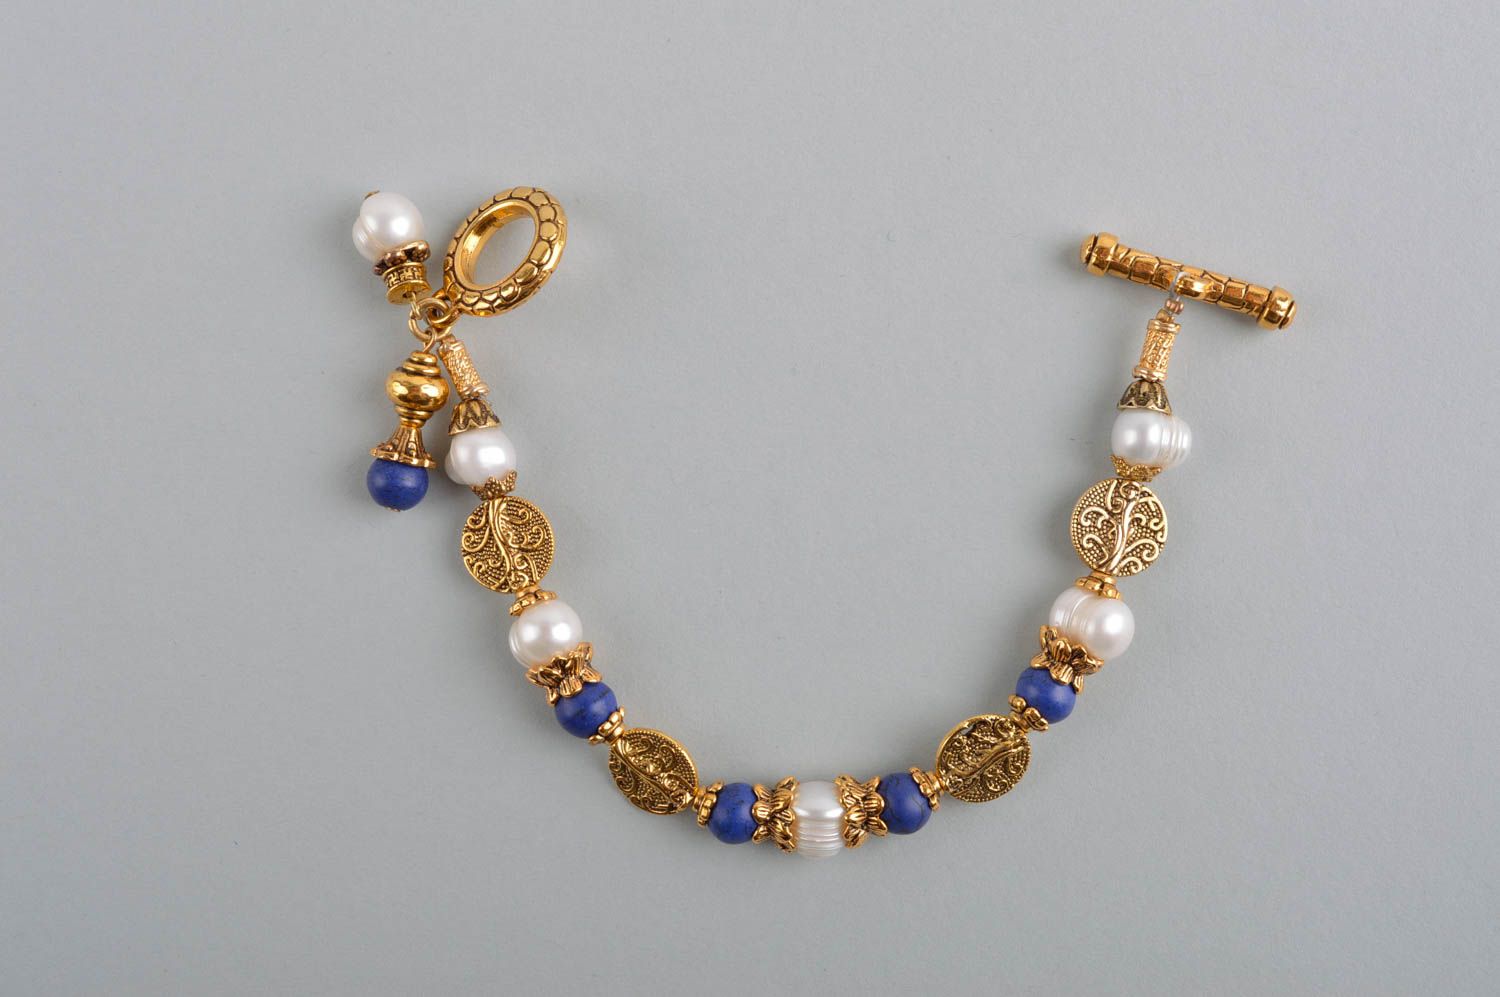 Handmade jewelry set gemstone earrings wrist bracelet bead jewelry stone jewelry photo 5